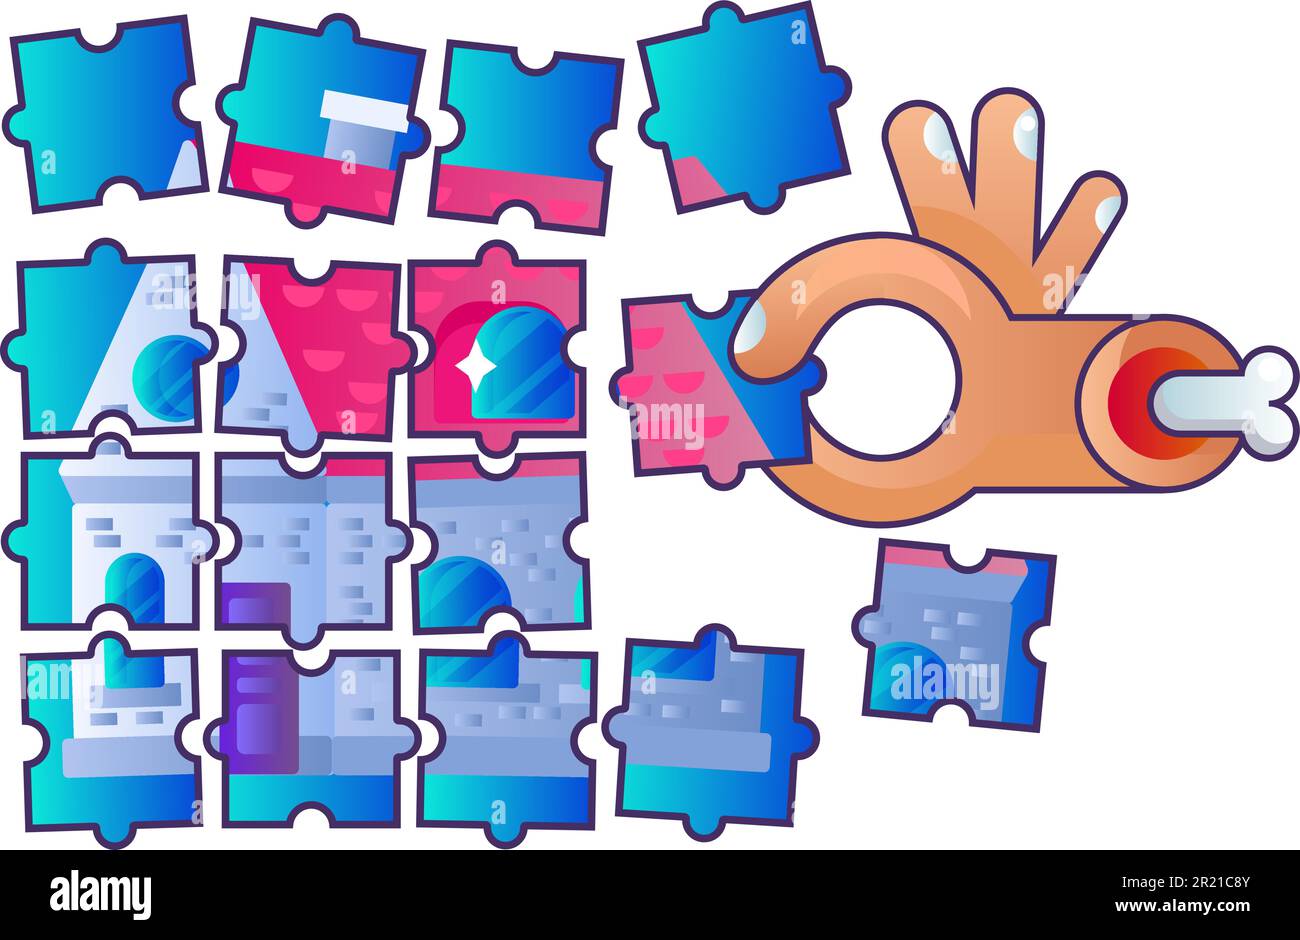 Immobilienbau Puzzle Puzzle Vector. Hand halten ein Brettspiel, spielen und sammeln Hausbild, Lösung finden. Spielerausbildung Stock Vektor